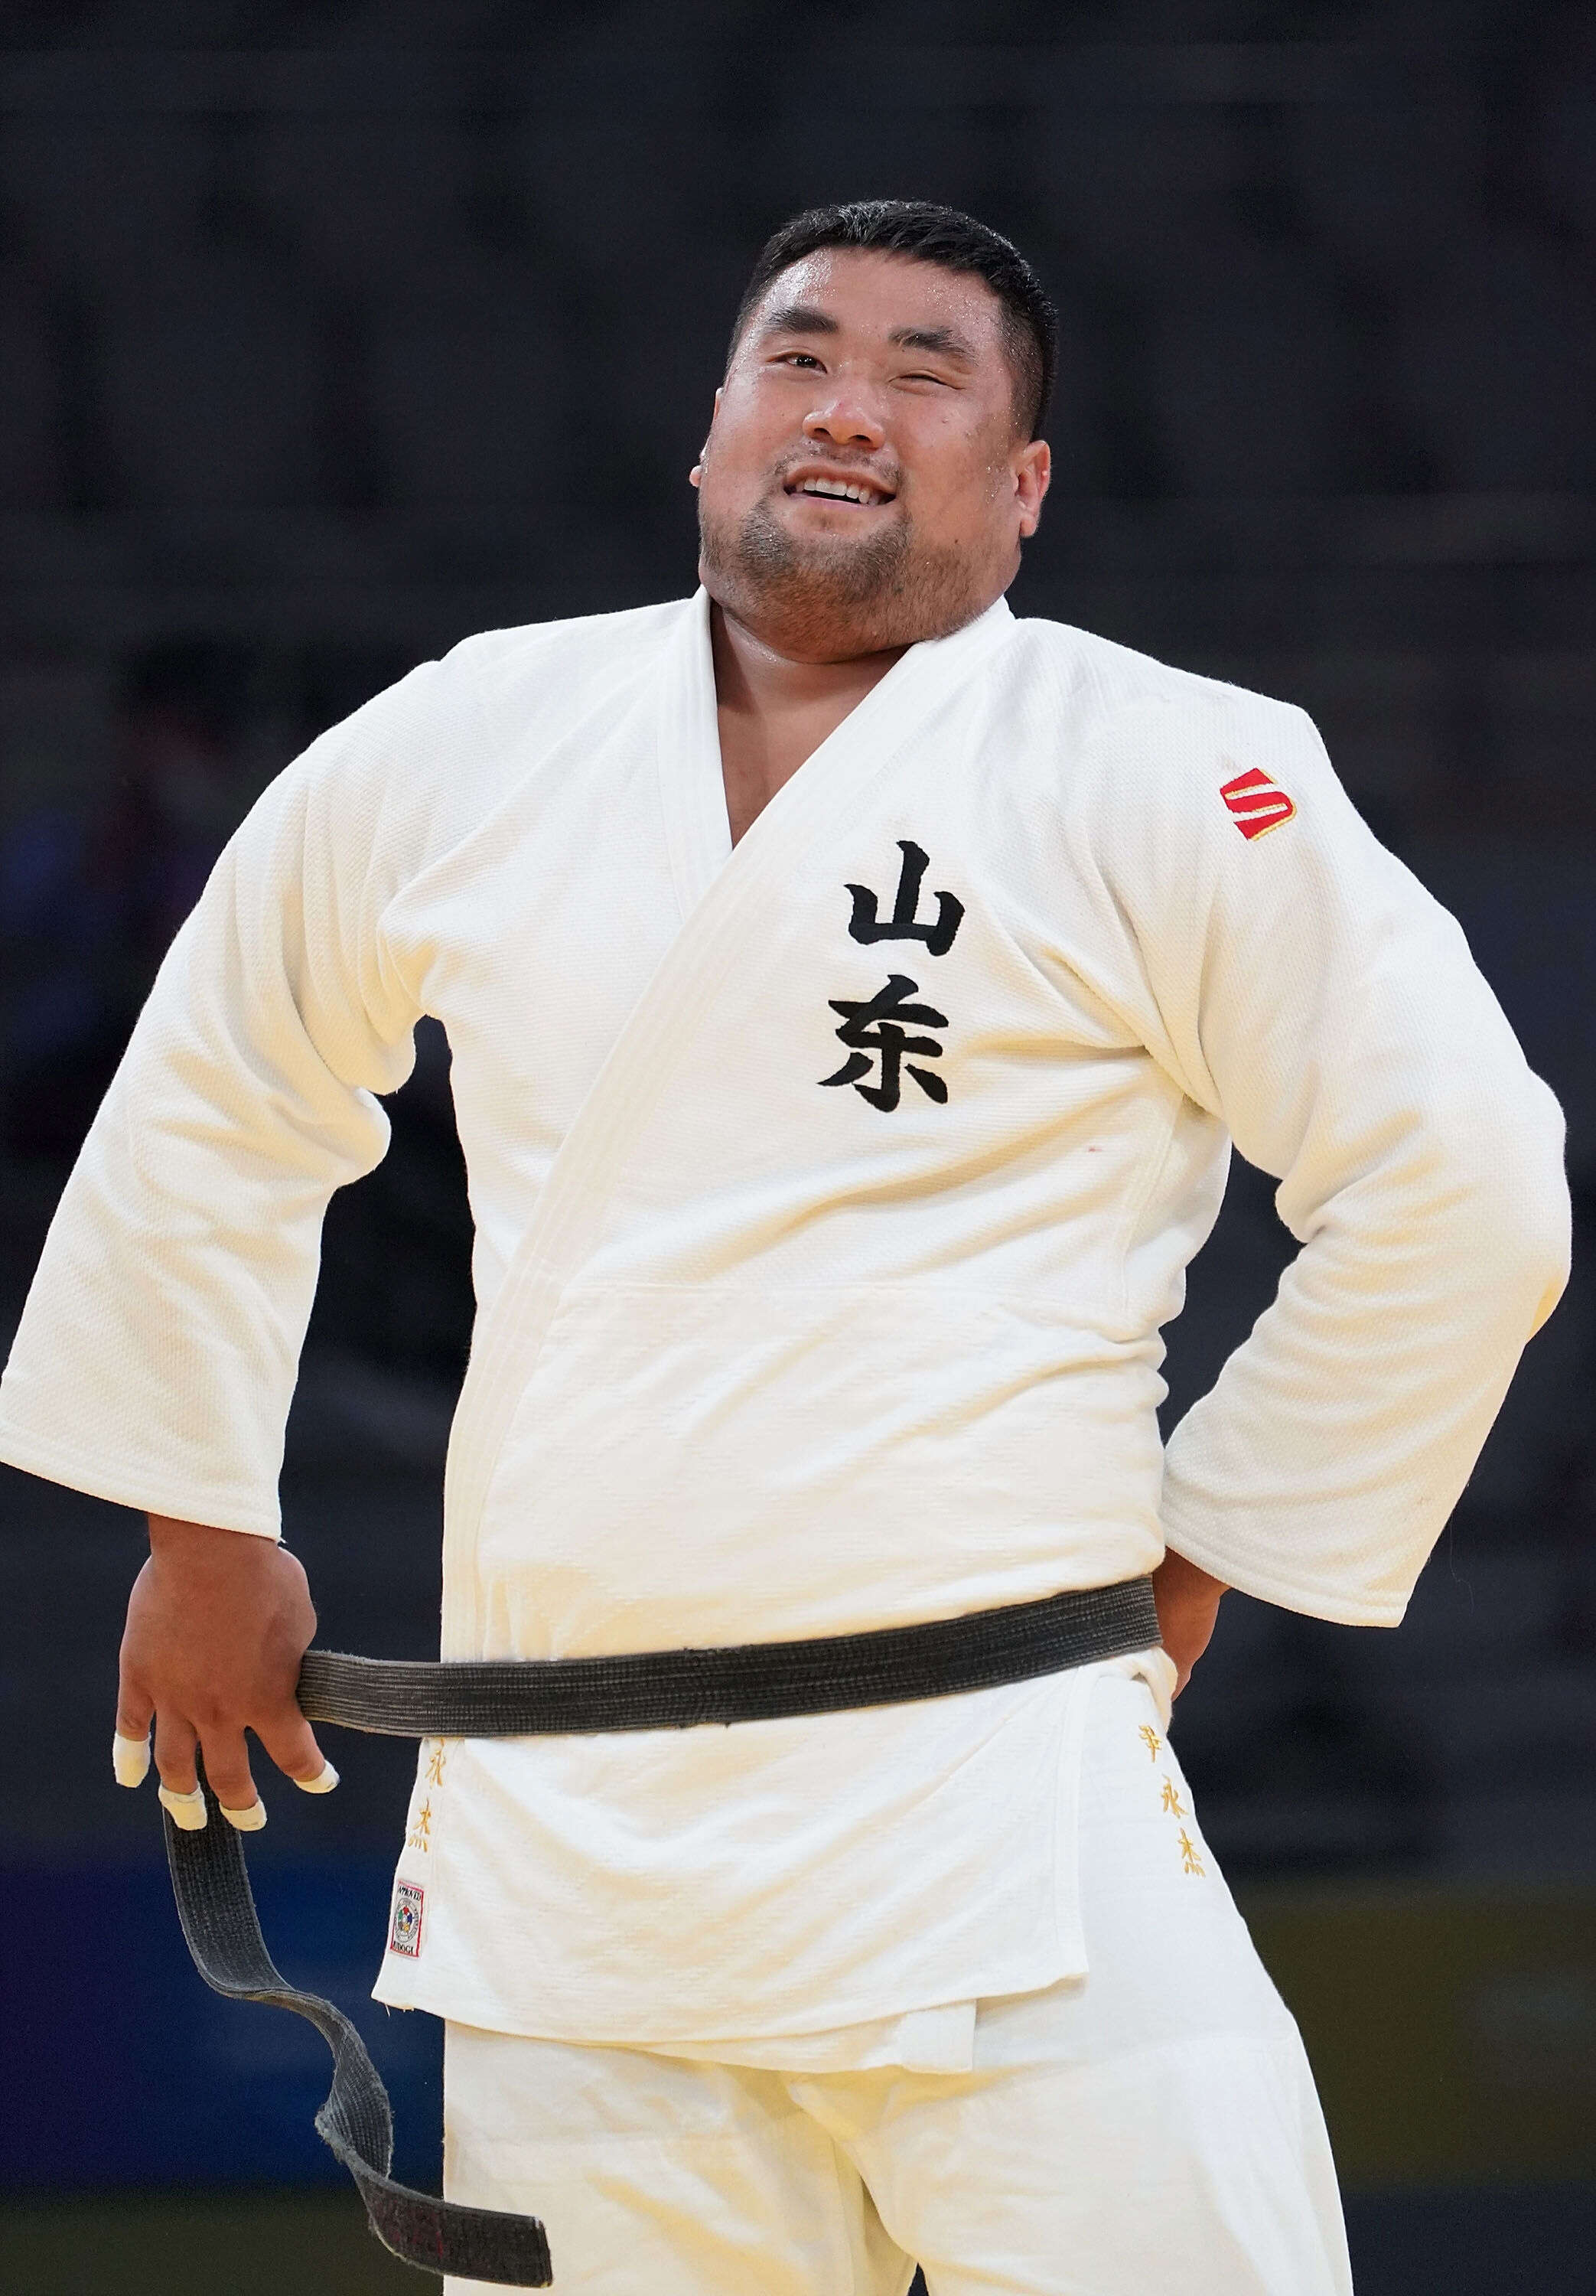 Judo-Yin Yongjie won the men's over 100 kg championship